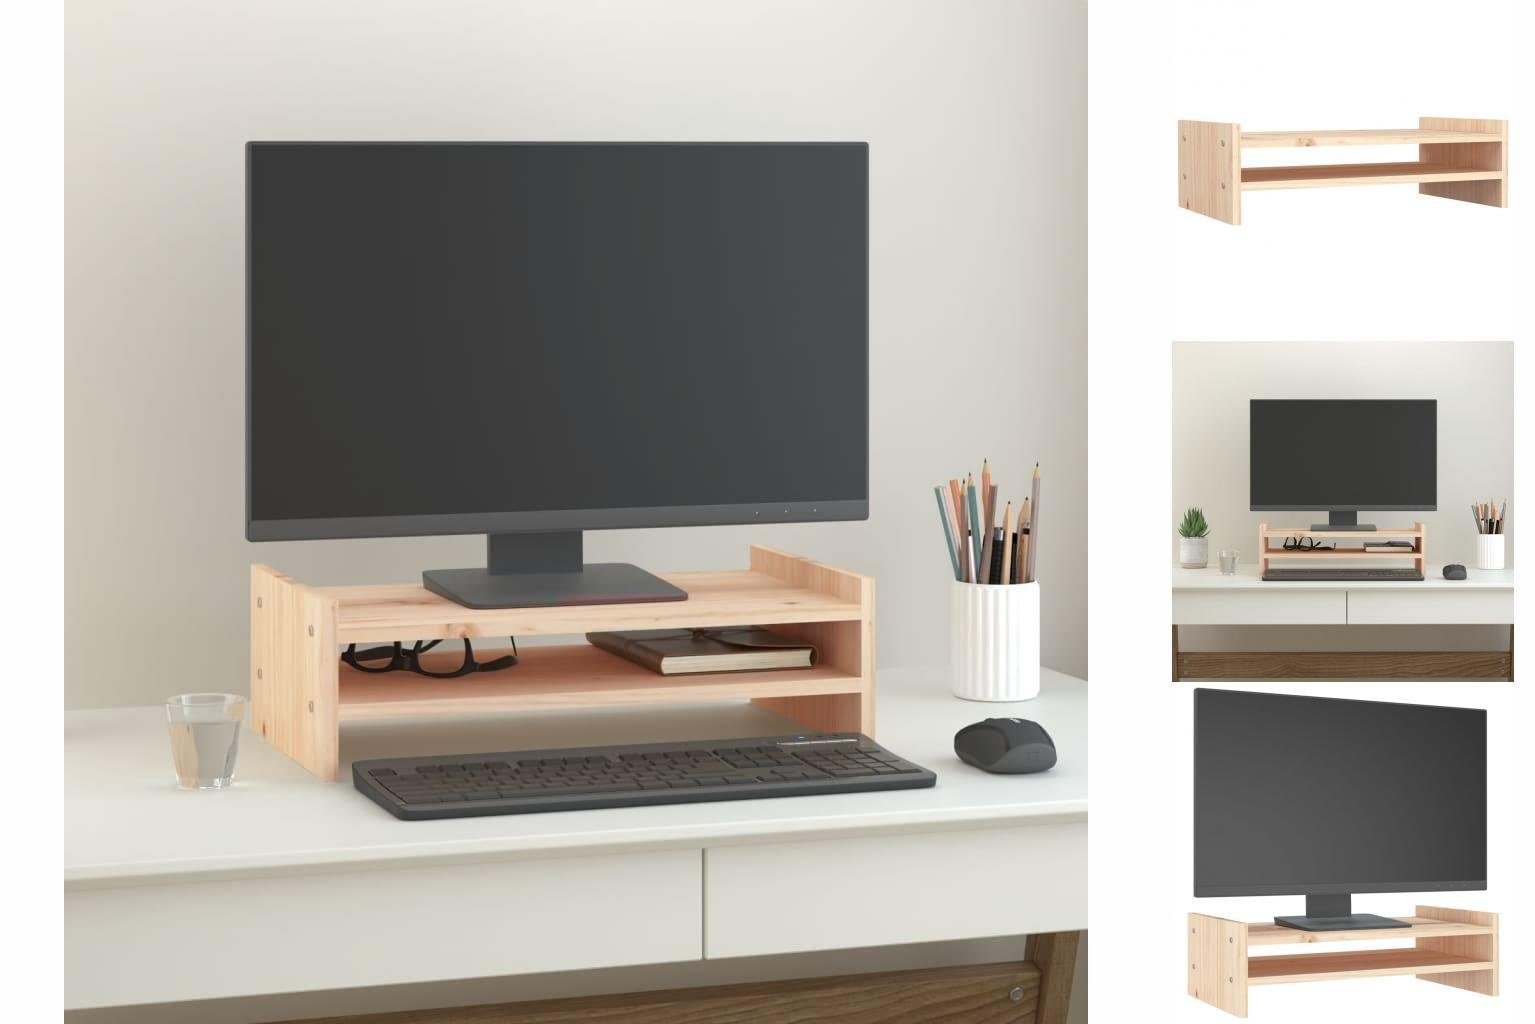 vidaXL Monitorständer 50x27x15 cm Massivholz Kiefer Erhöhung Bildschirm Tisch Monitor-Halterung Natur